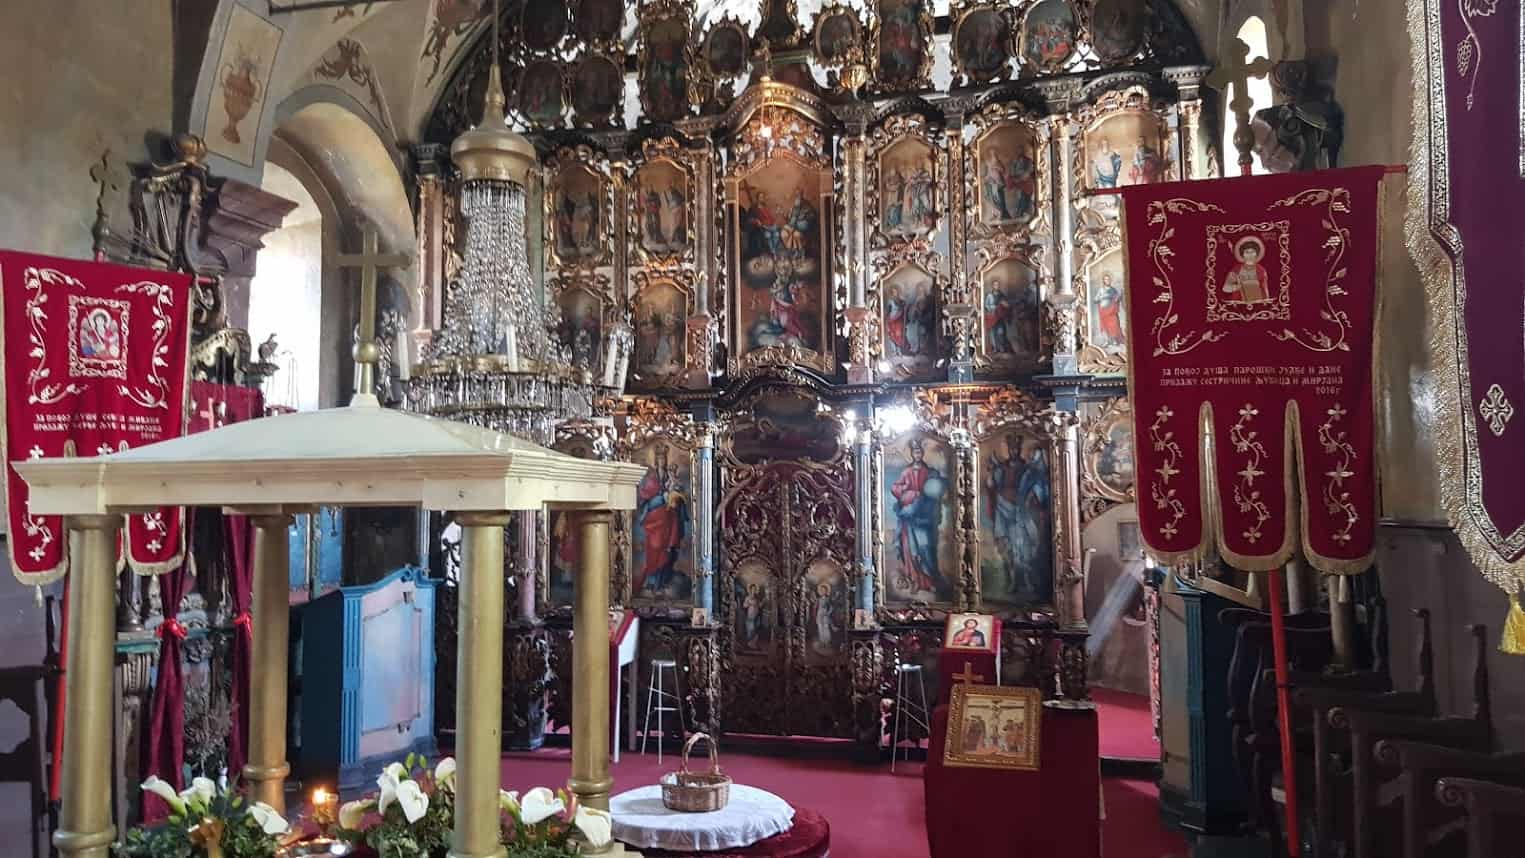 RASKOŠ "SRPSKOG BAROKA": Ikonostas u crkvi u Despotovu